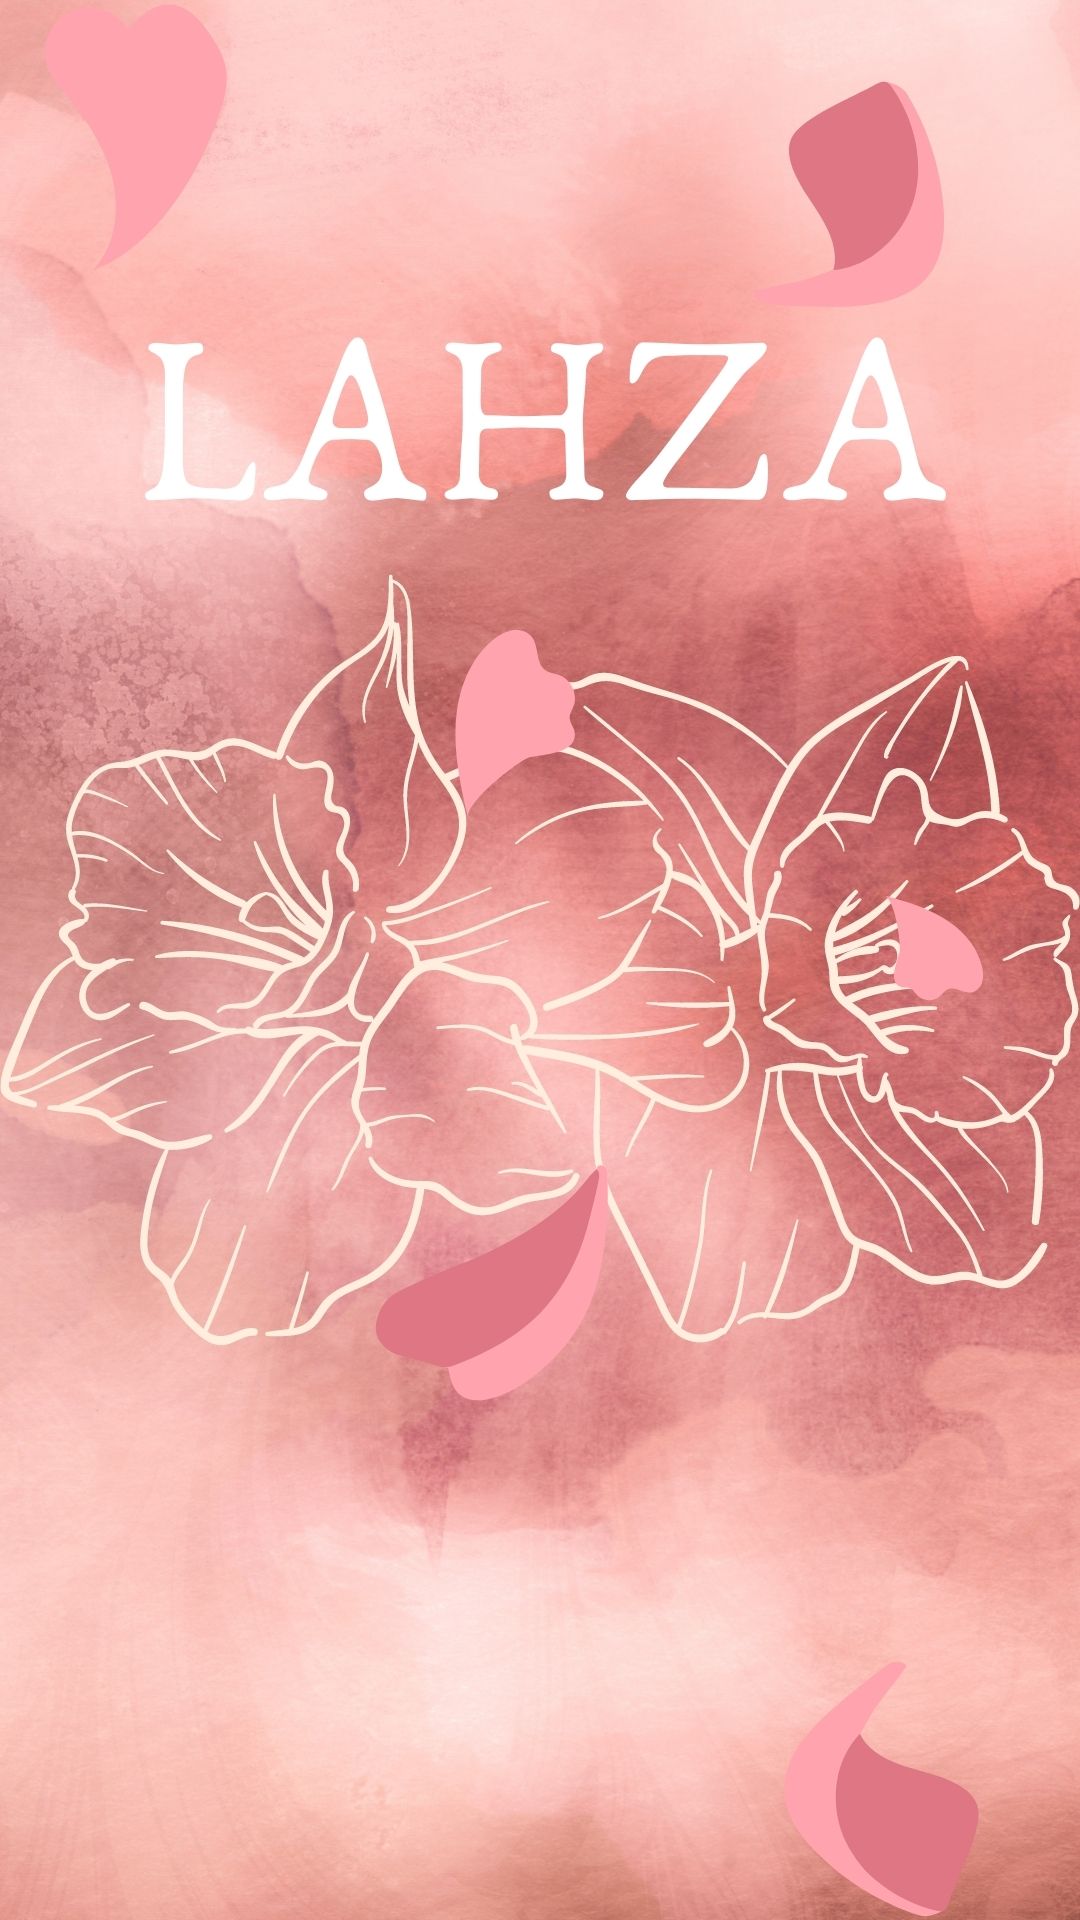 LAHZA's image